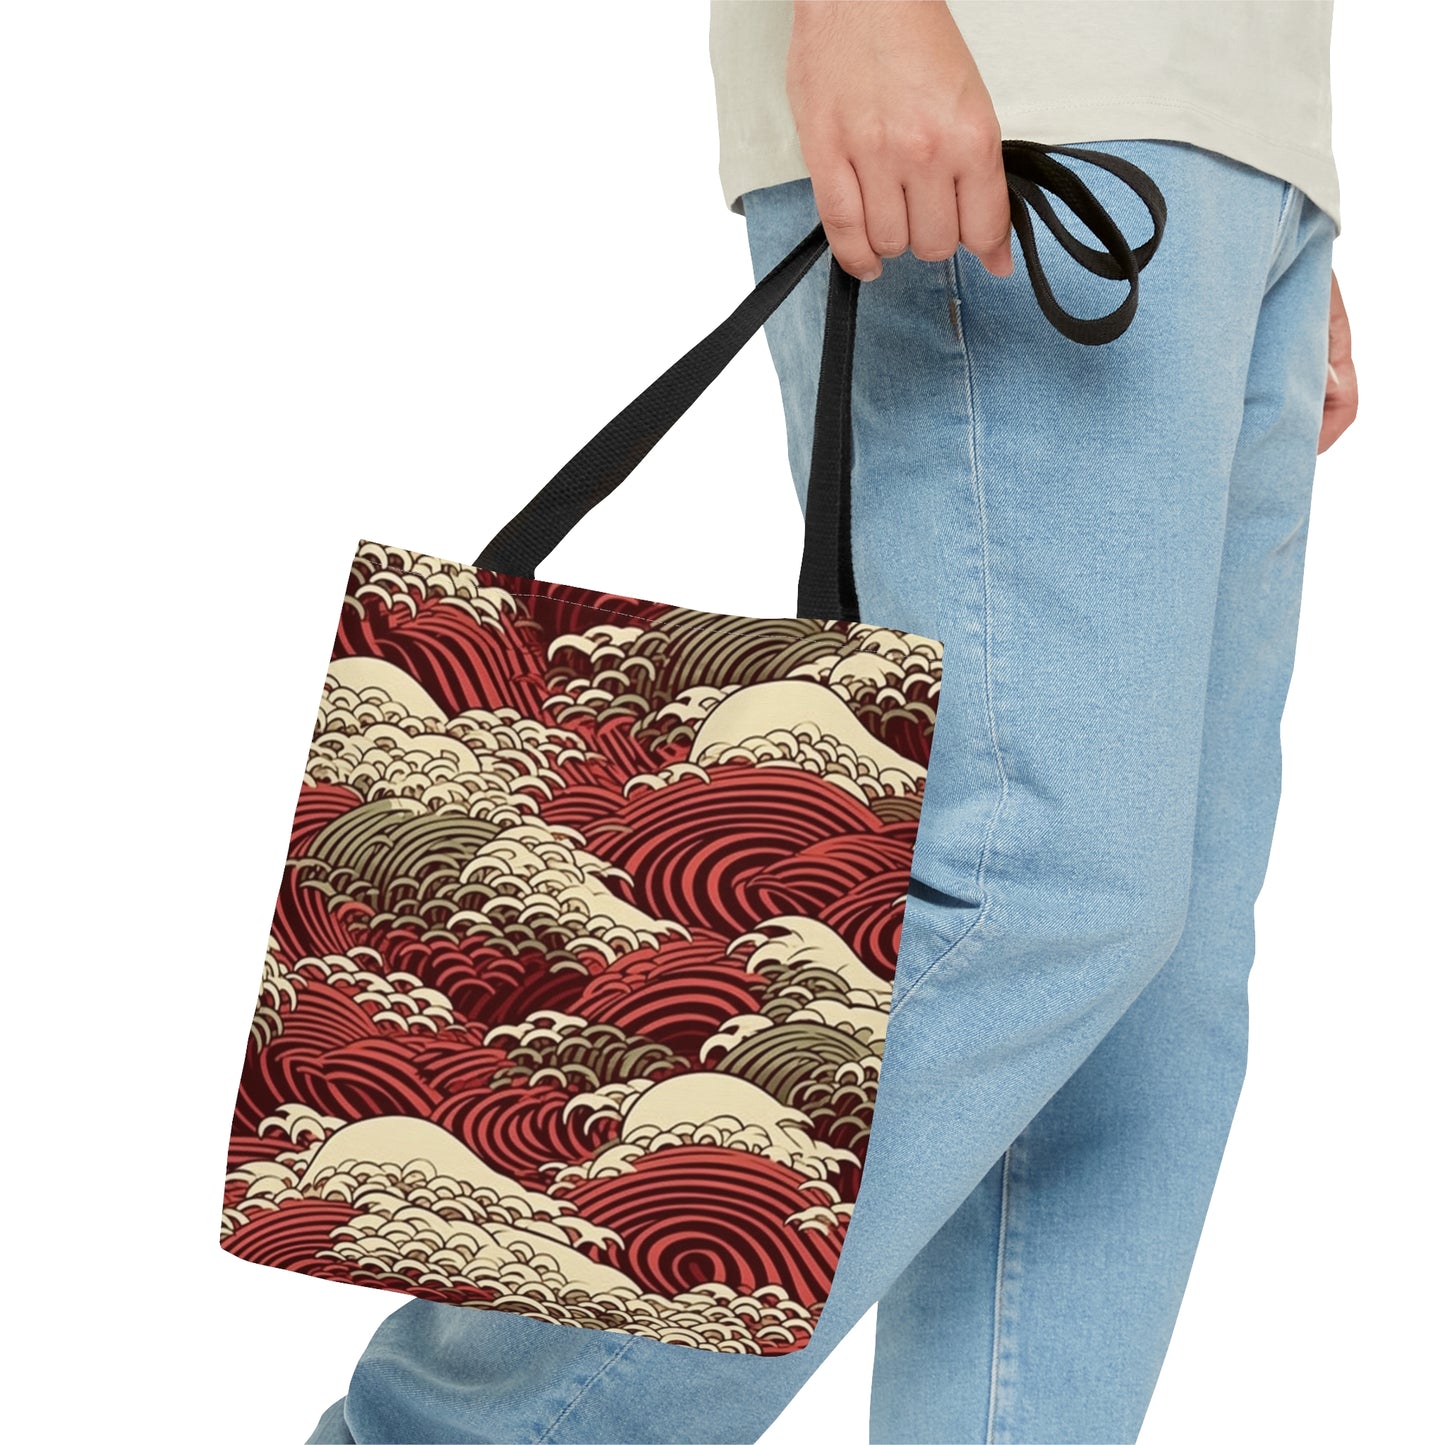 Tote Bag Japanese Wave Design